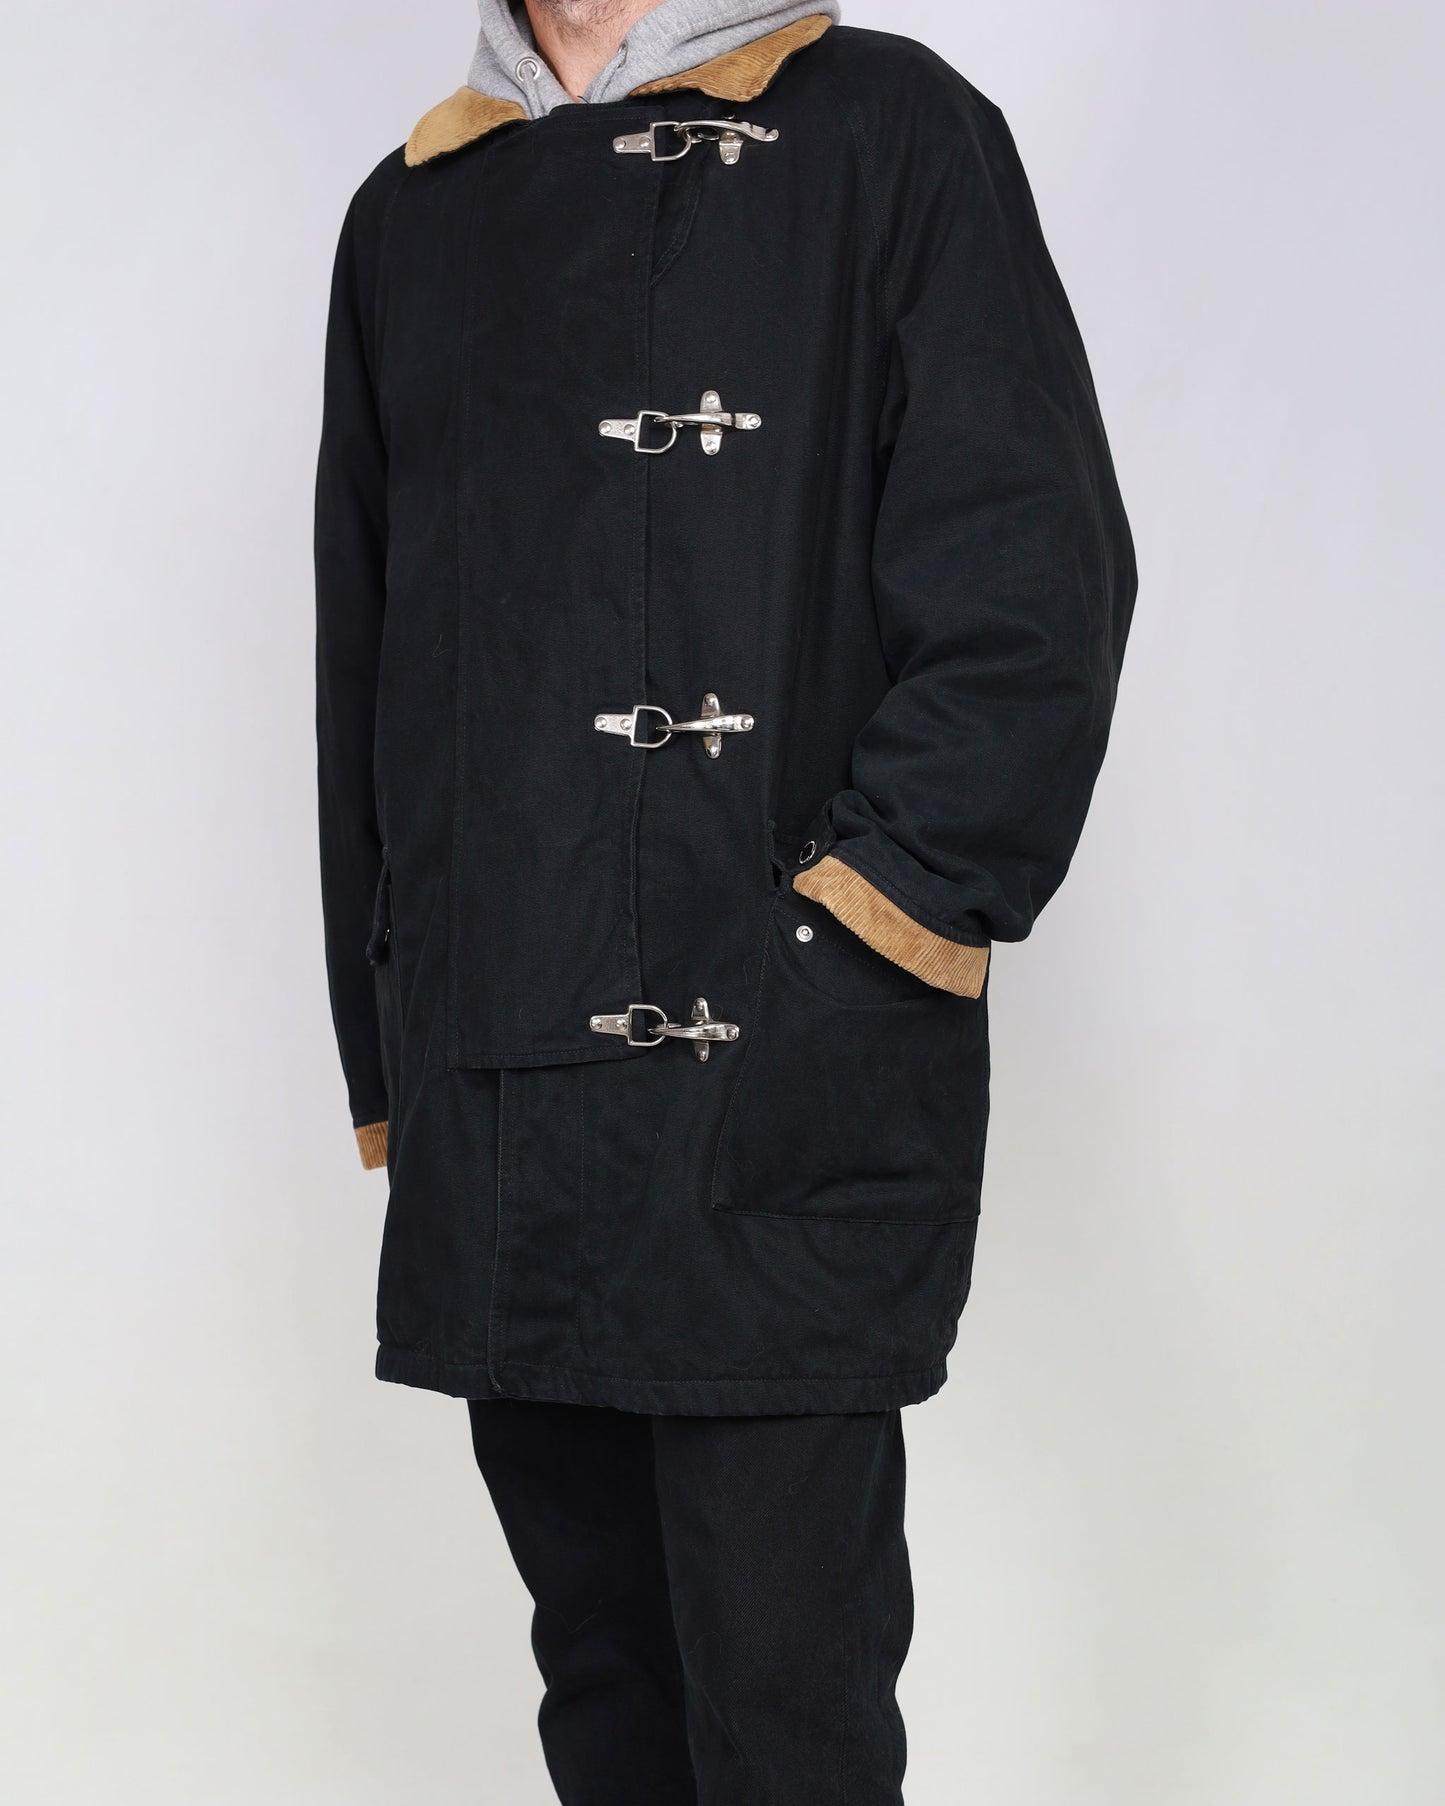 Giacca sportiva con fibbia O'Kief con risvolti e maniche in velluto a coste, nera XL 